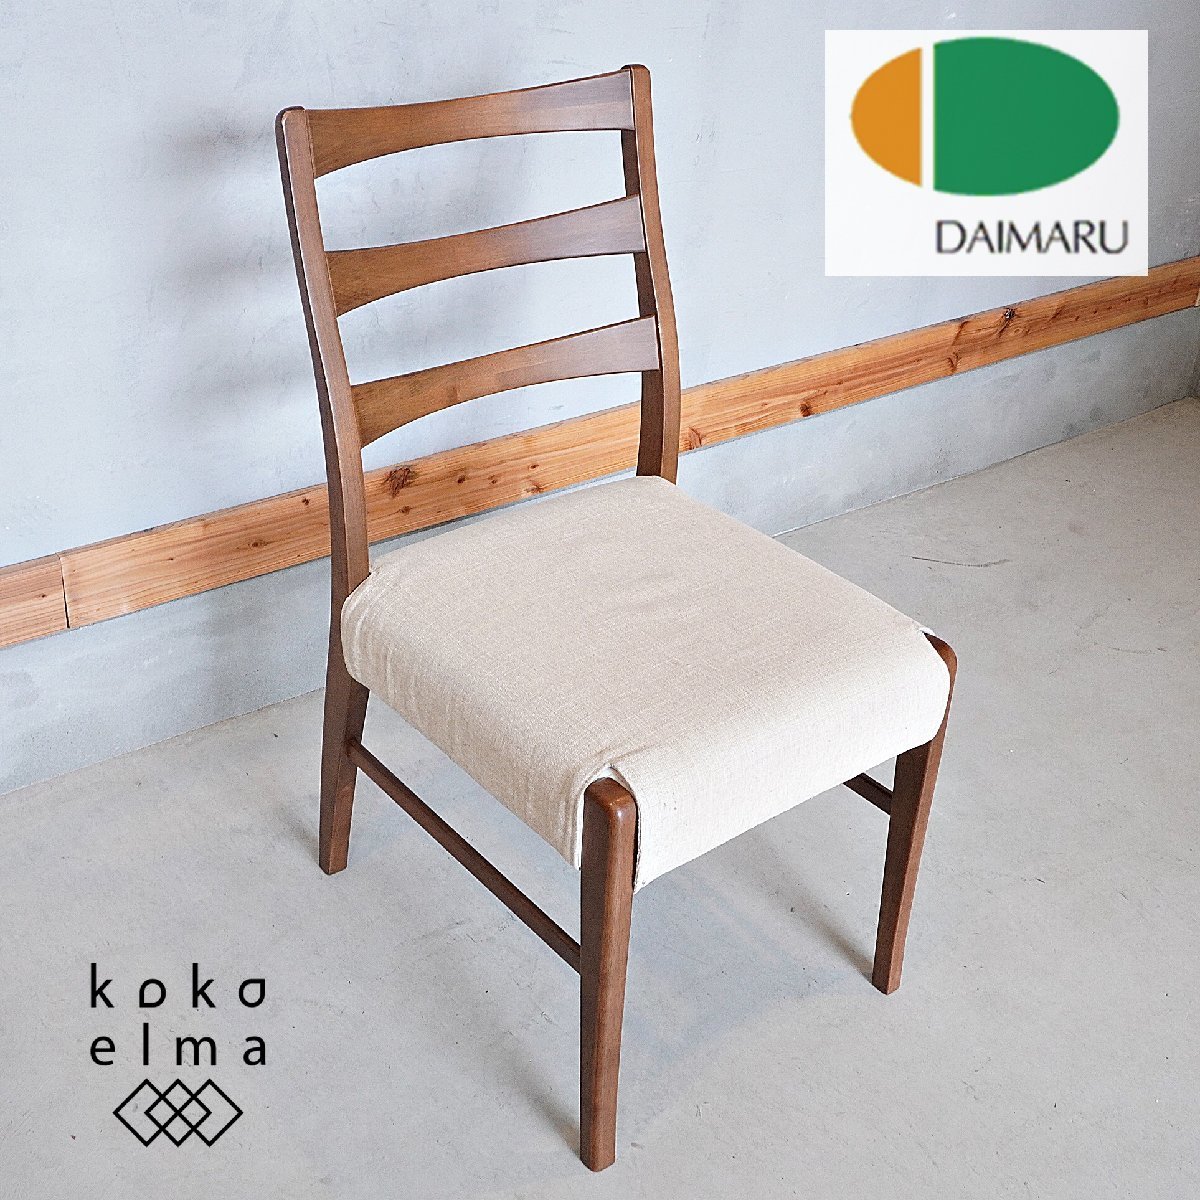 DAIMARU 家具の大丸 ROASTII アルダー無垢材 ダイニングチェア アームレスチェア シンプル ナチュラル 北欧スタイル 木製椅子 DF406